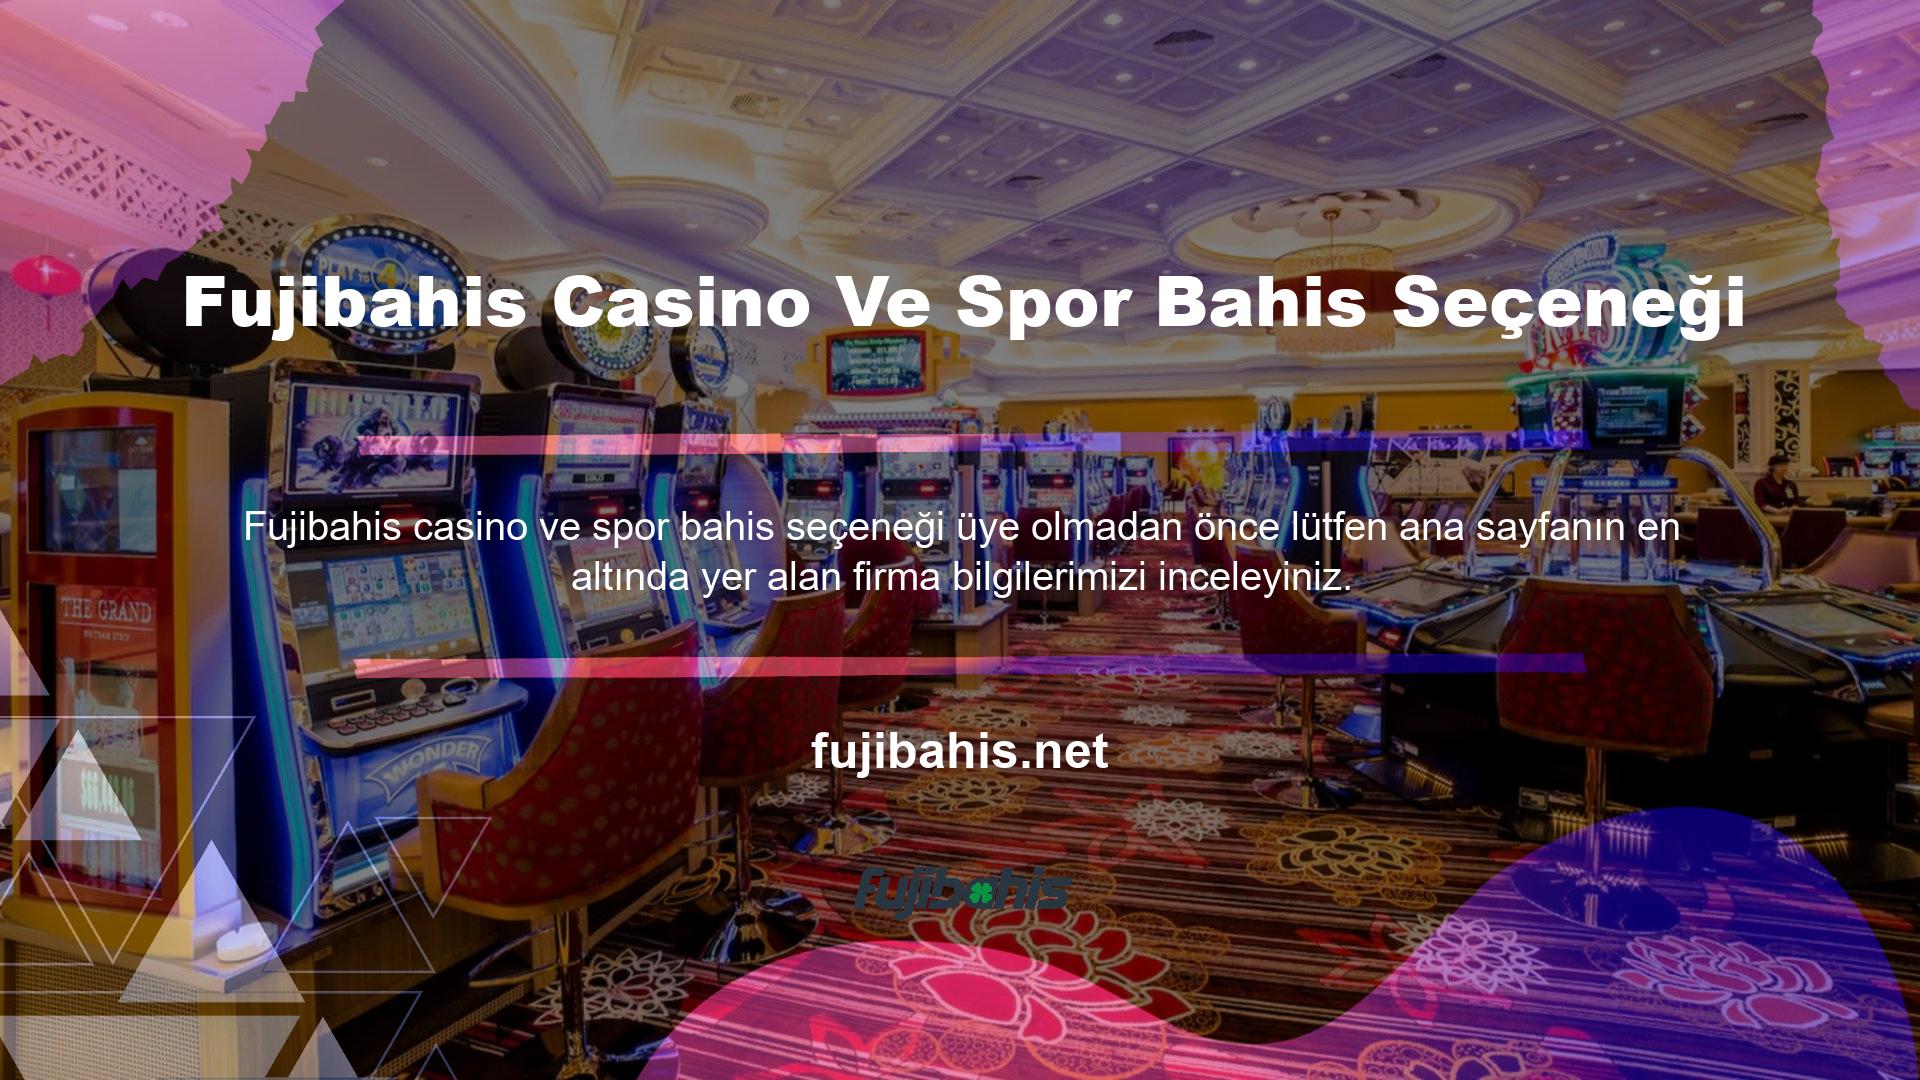 Şirket, başta Avrupa olmak üzere iOS ve Android uygulamalarıyla uyumlu spor bahisleri ve casino oyunları sunmaktadır